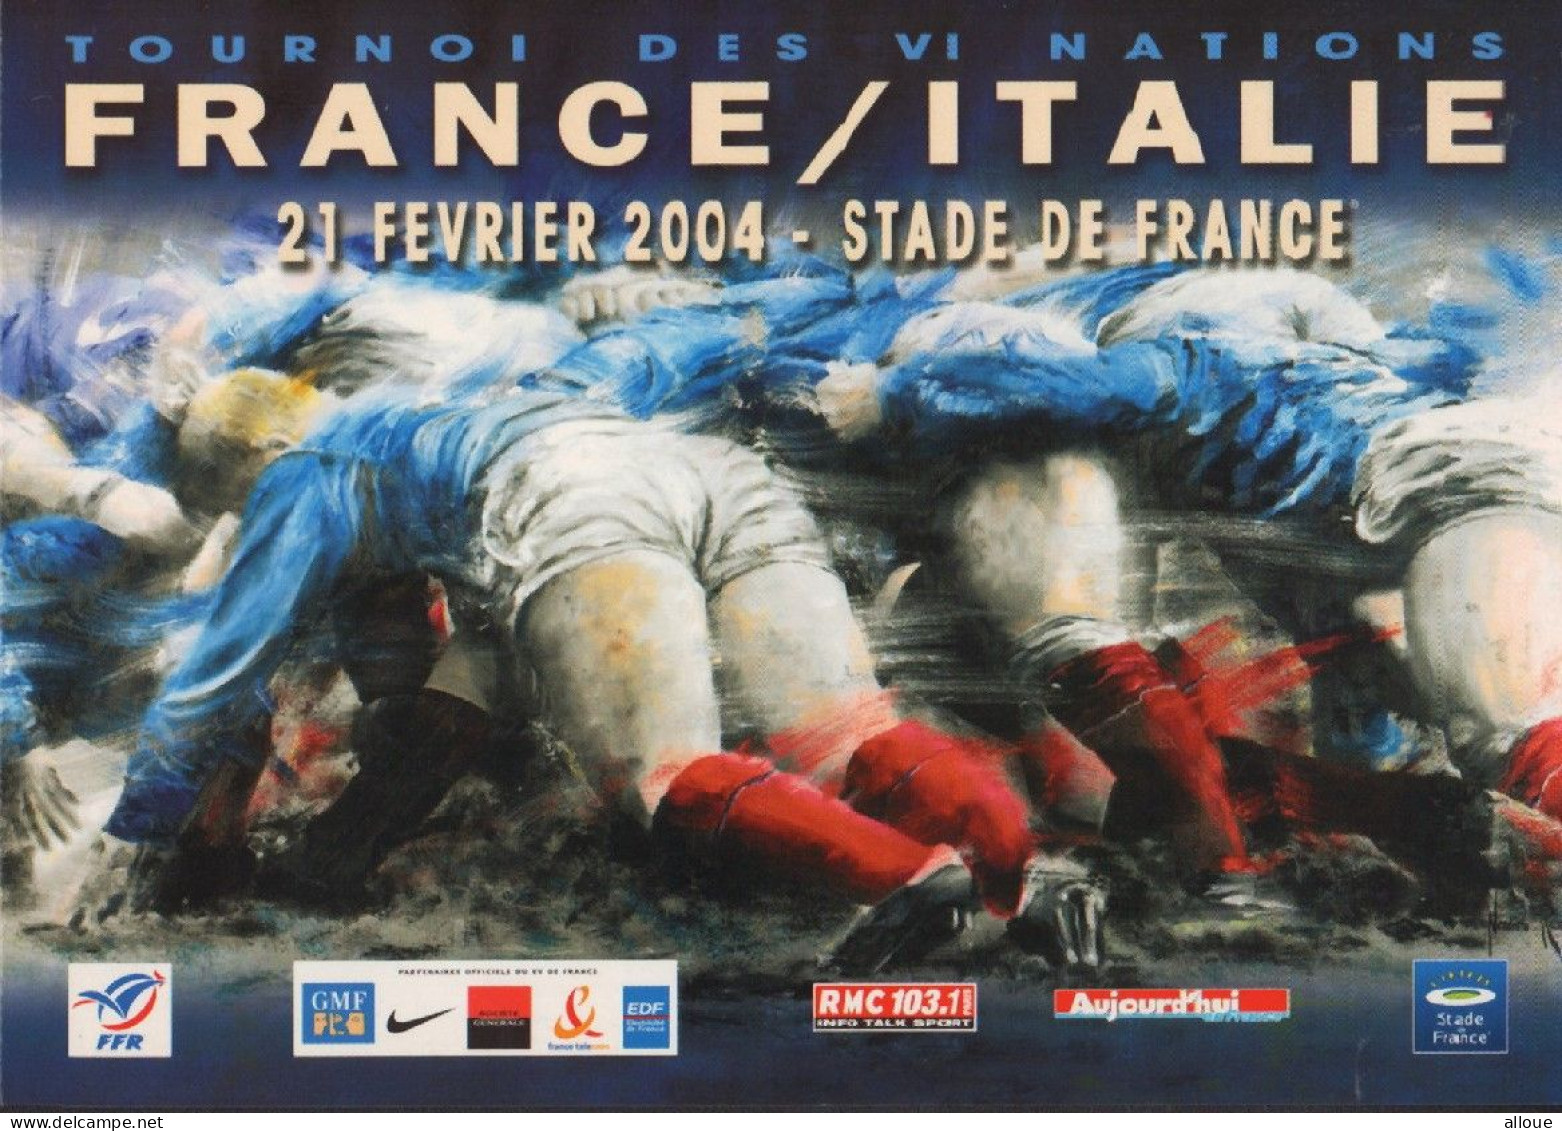 Rugby FRANCE/ITALIE TOURNOI DES VI NATIONS STADE DE FRANCE 21-02-2004 - Rugby